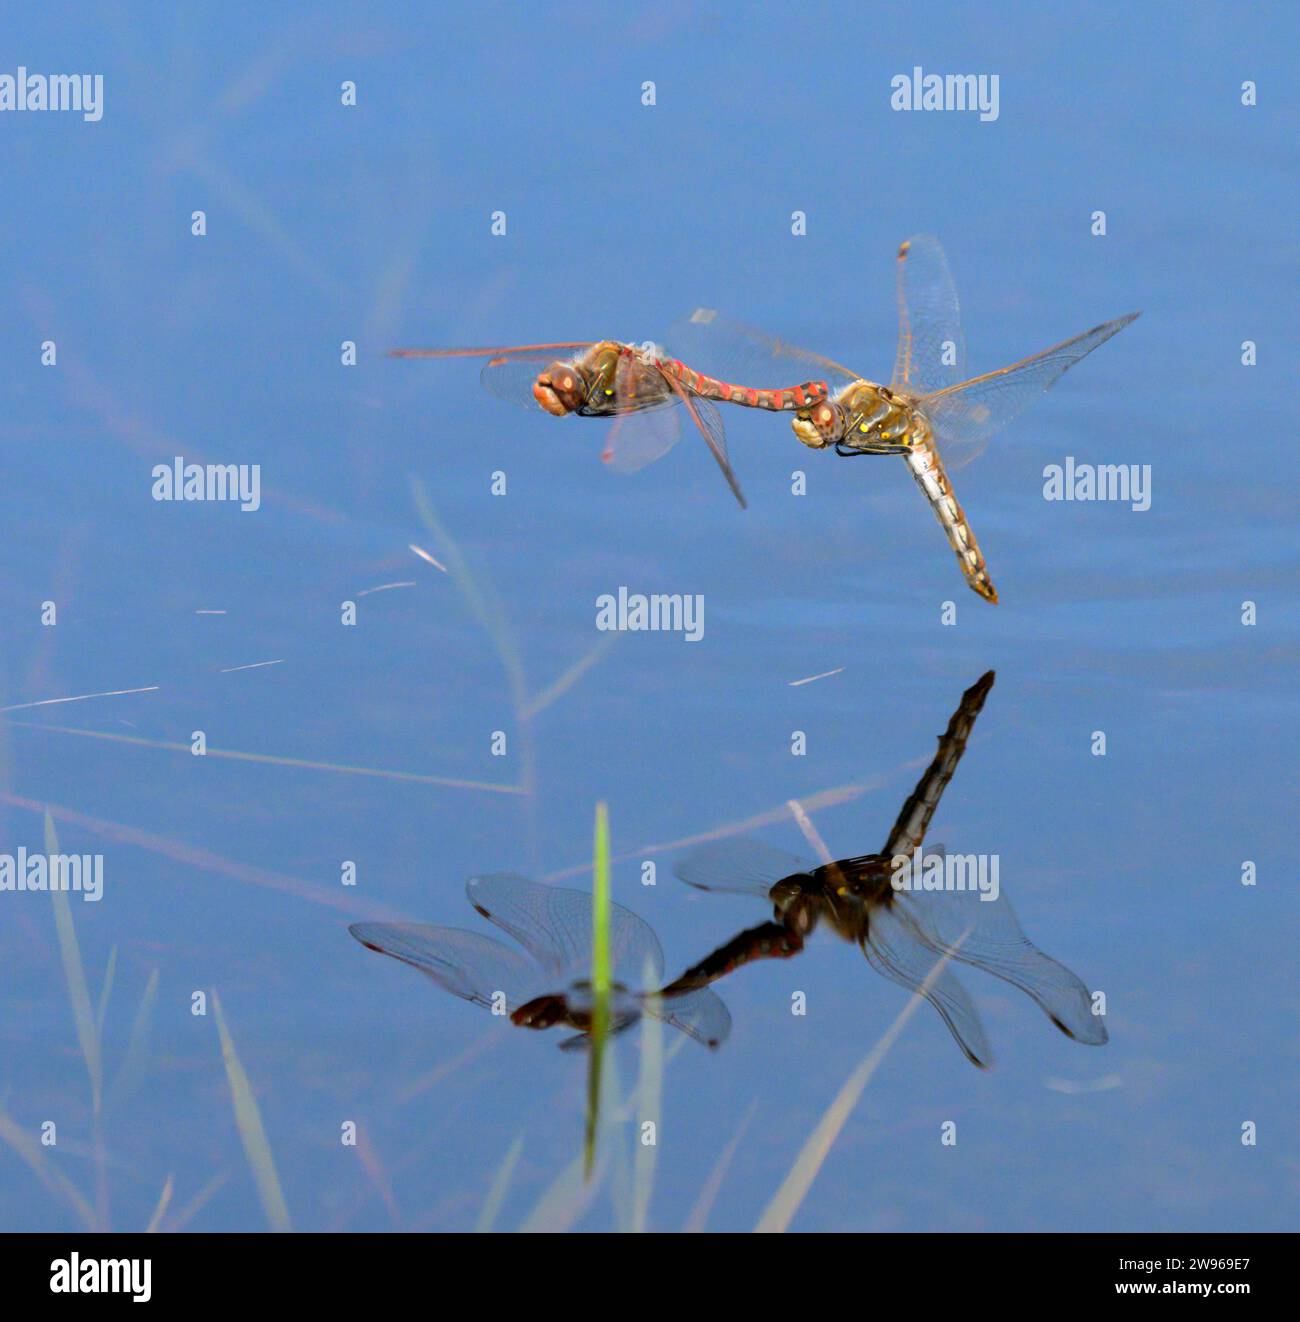 Ein paar Variegated Meadowhawk Libellen (Sympetrum corruptum) fliegen im Tandem über einen See und legen Eier im Wasser, Galveston, Texas, USA. Stockfoto